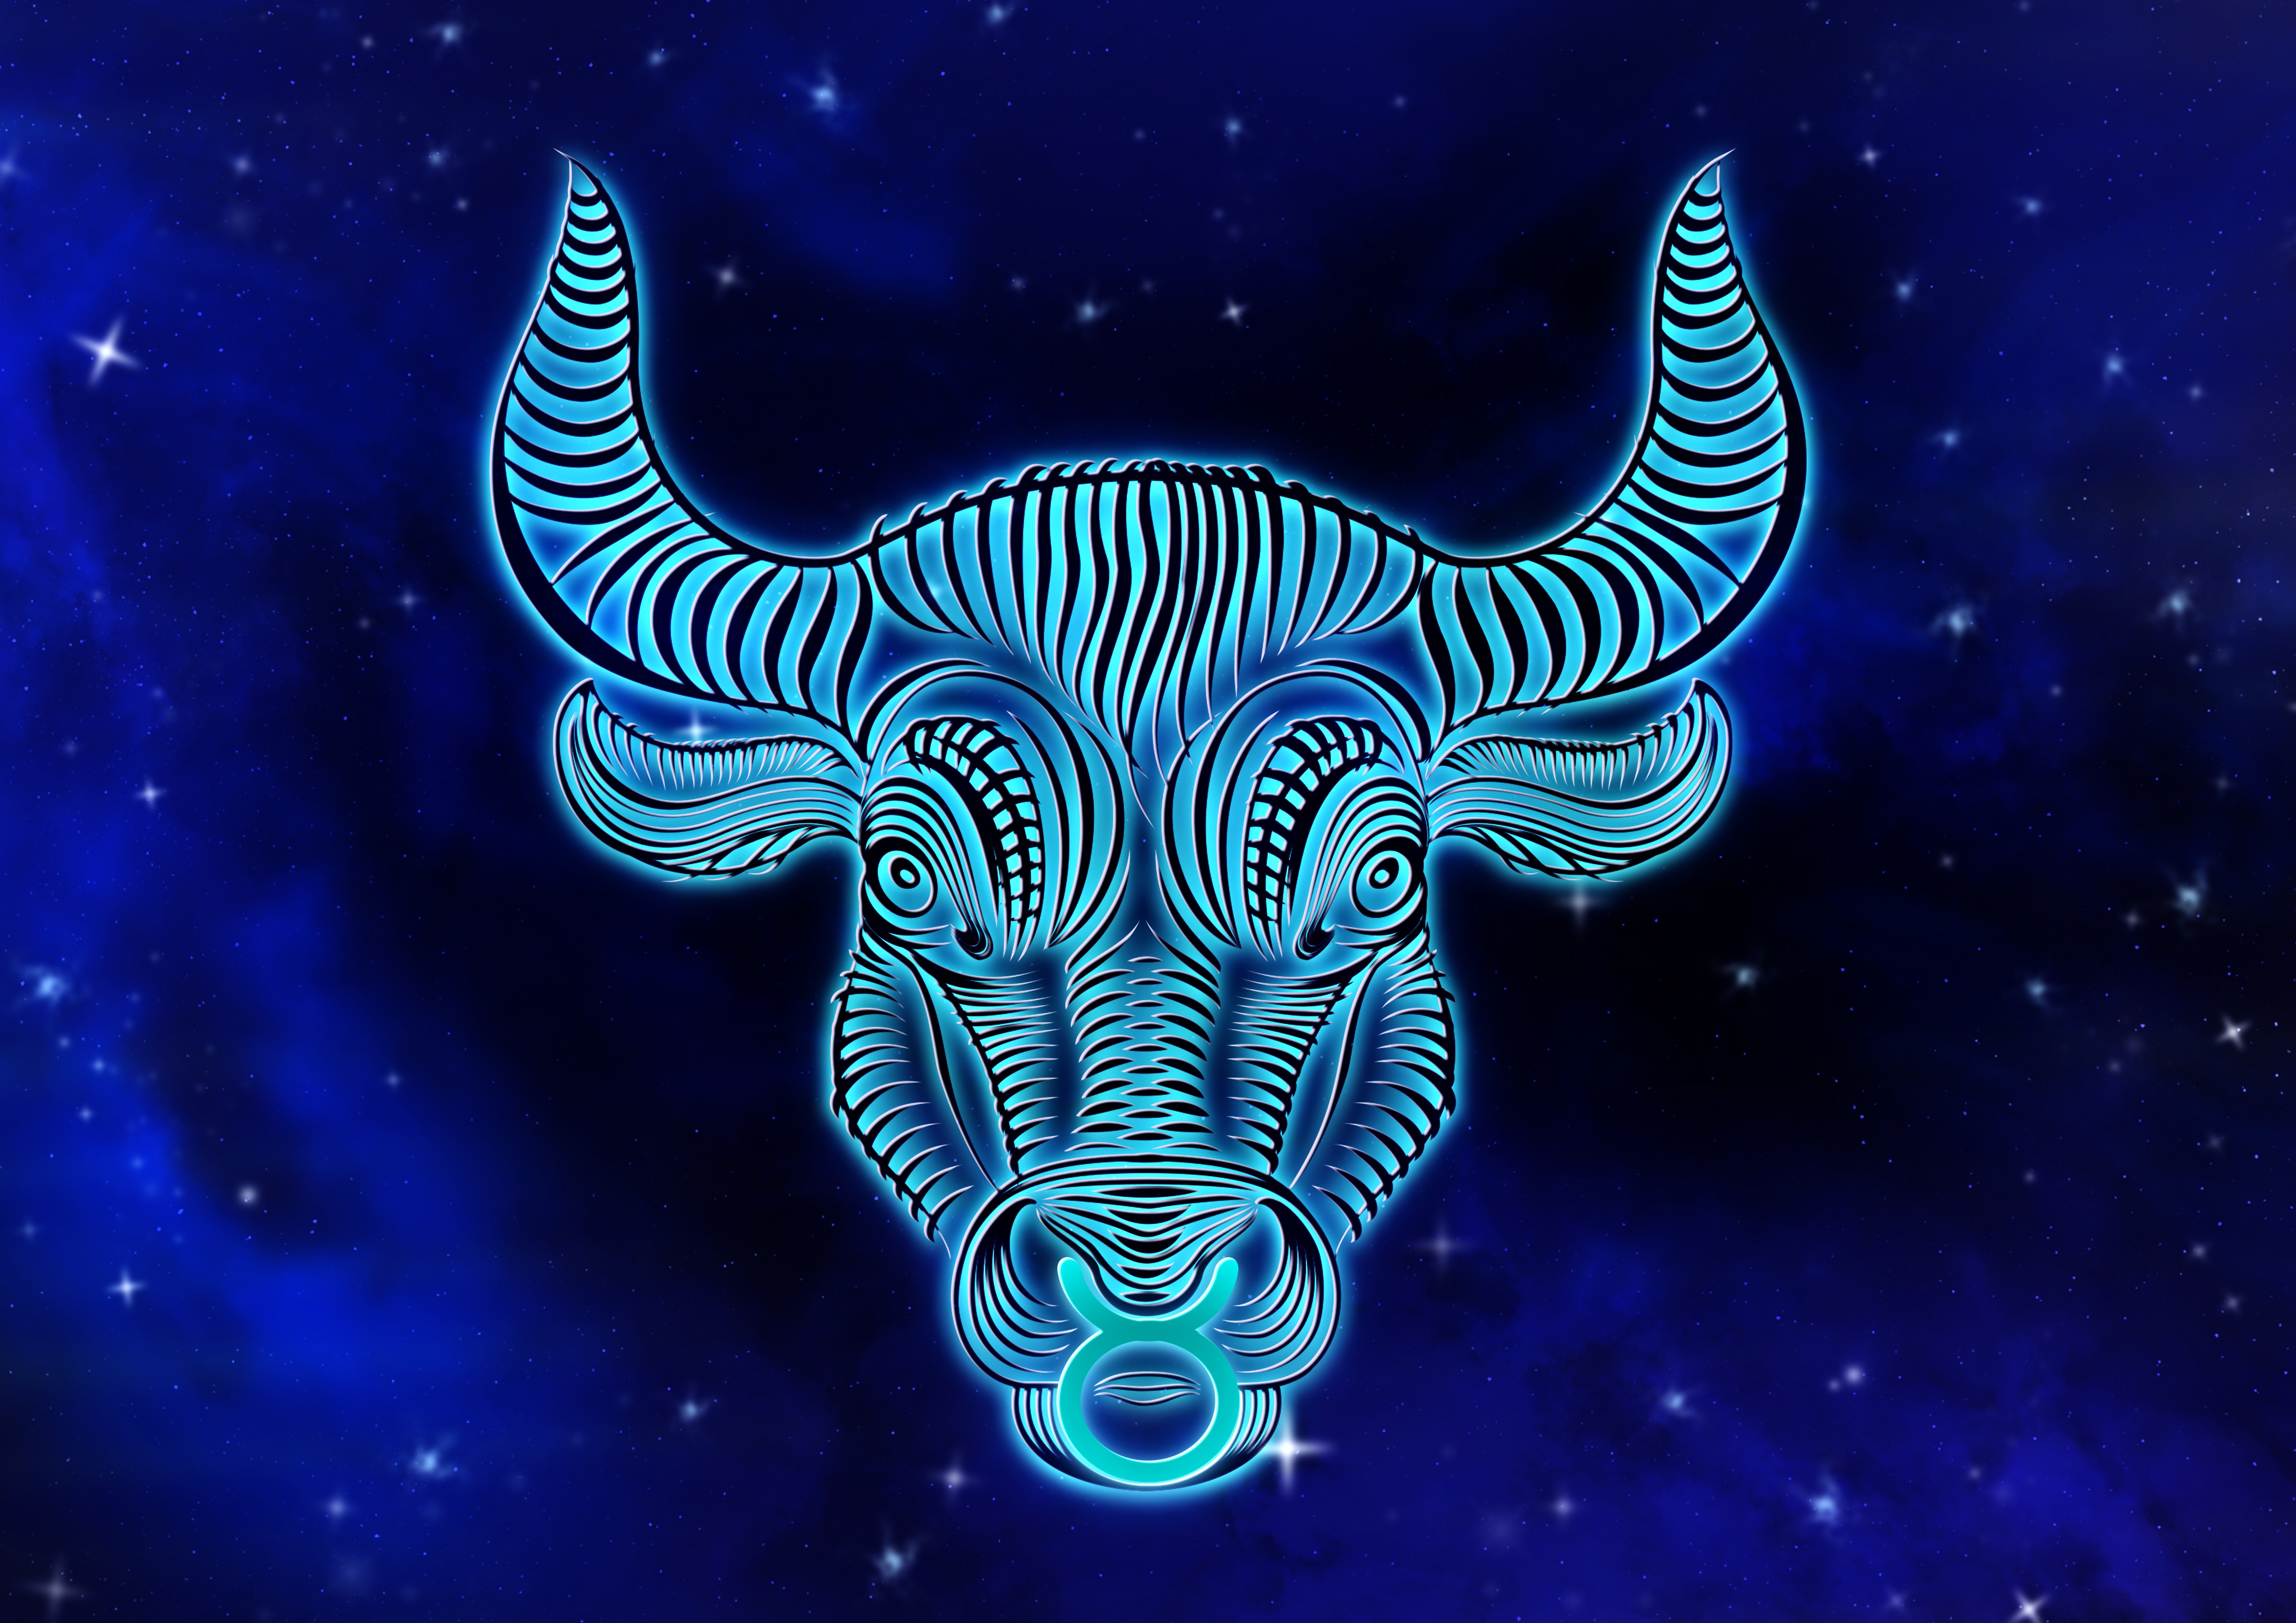 Wallpapers bull zodiac sign horoscope on the desktop